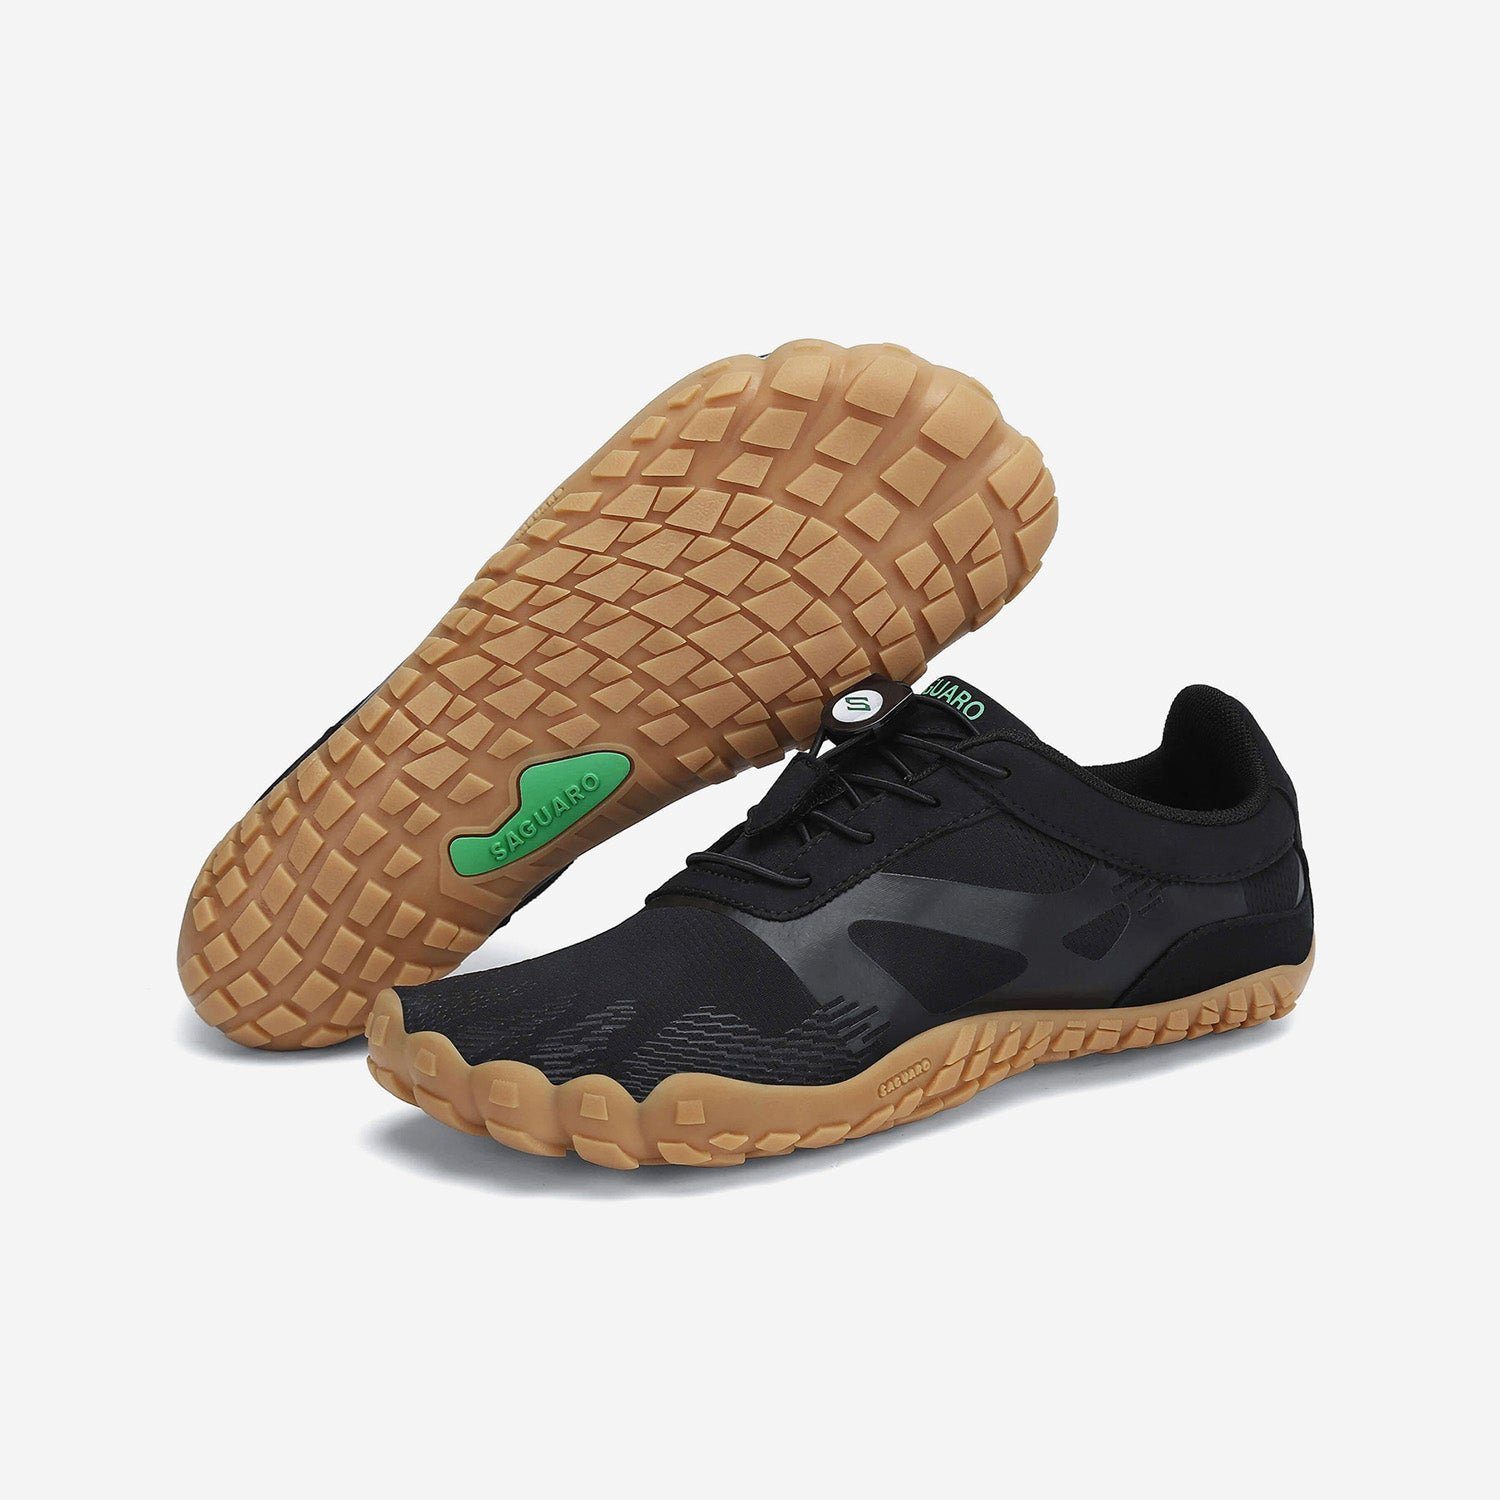 SAGUARO Barfußschuh (bequem, leicht, atmungsaktiv, rutschfest) Minimalschuhe Laufschuhe Sport-Schuhe Jogging Sneaker Trail-Running Schwarz AC